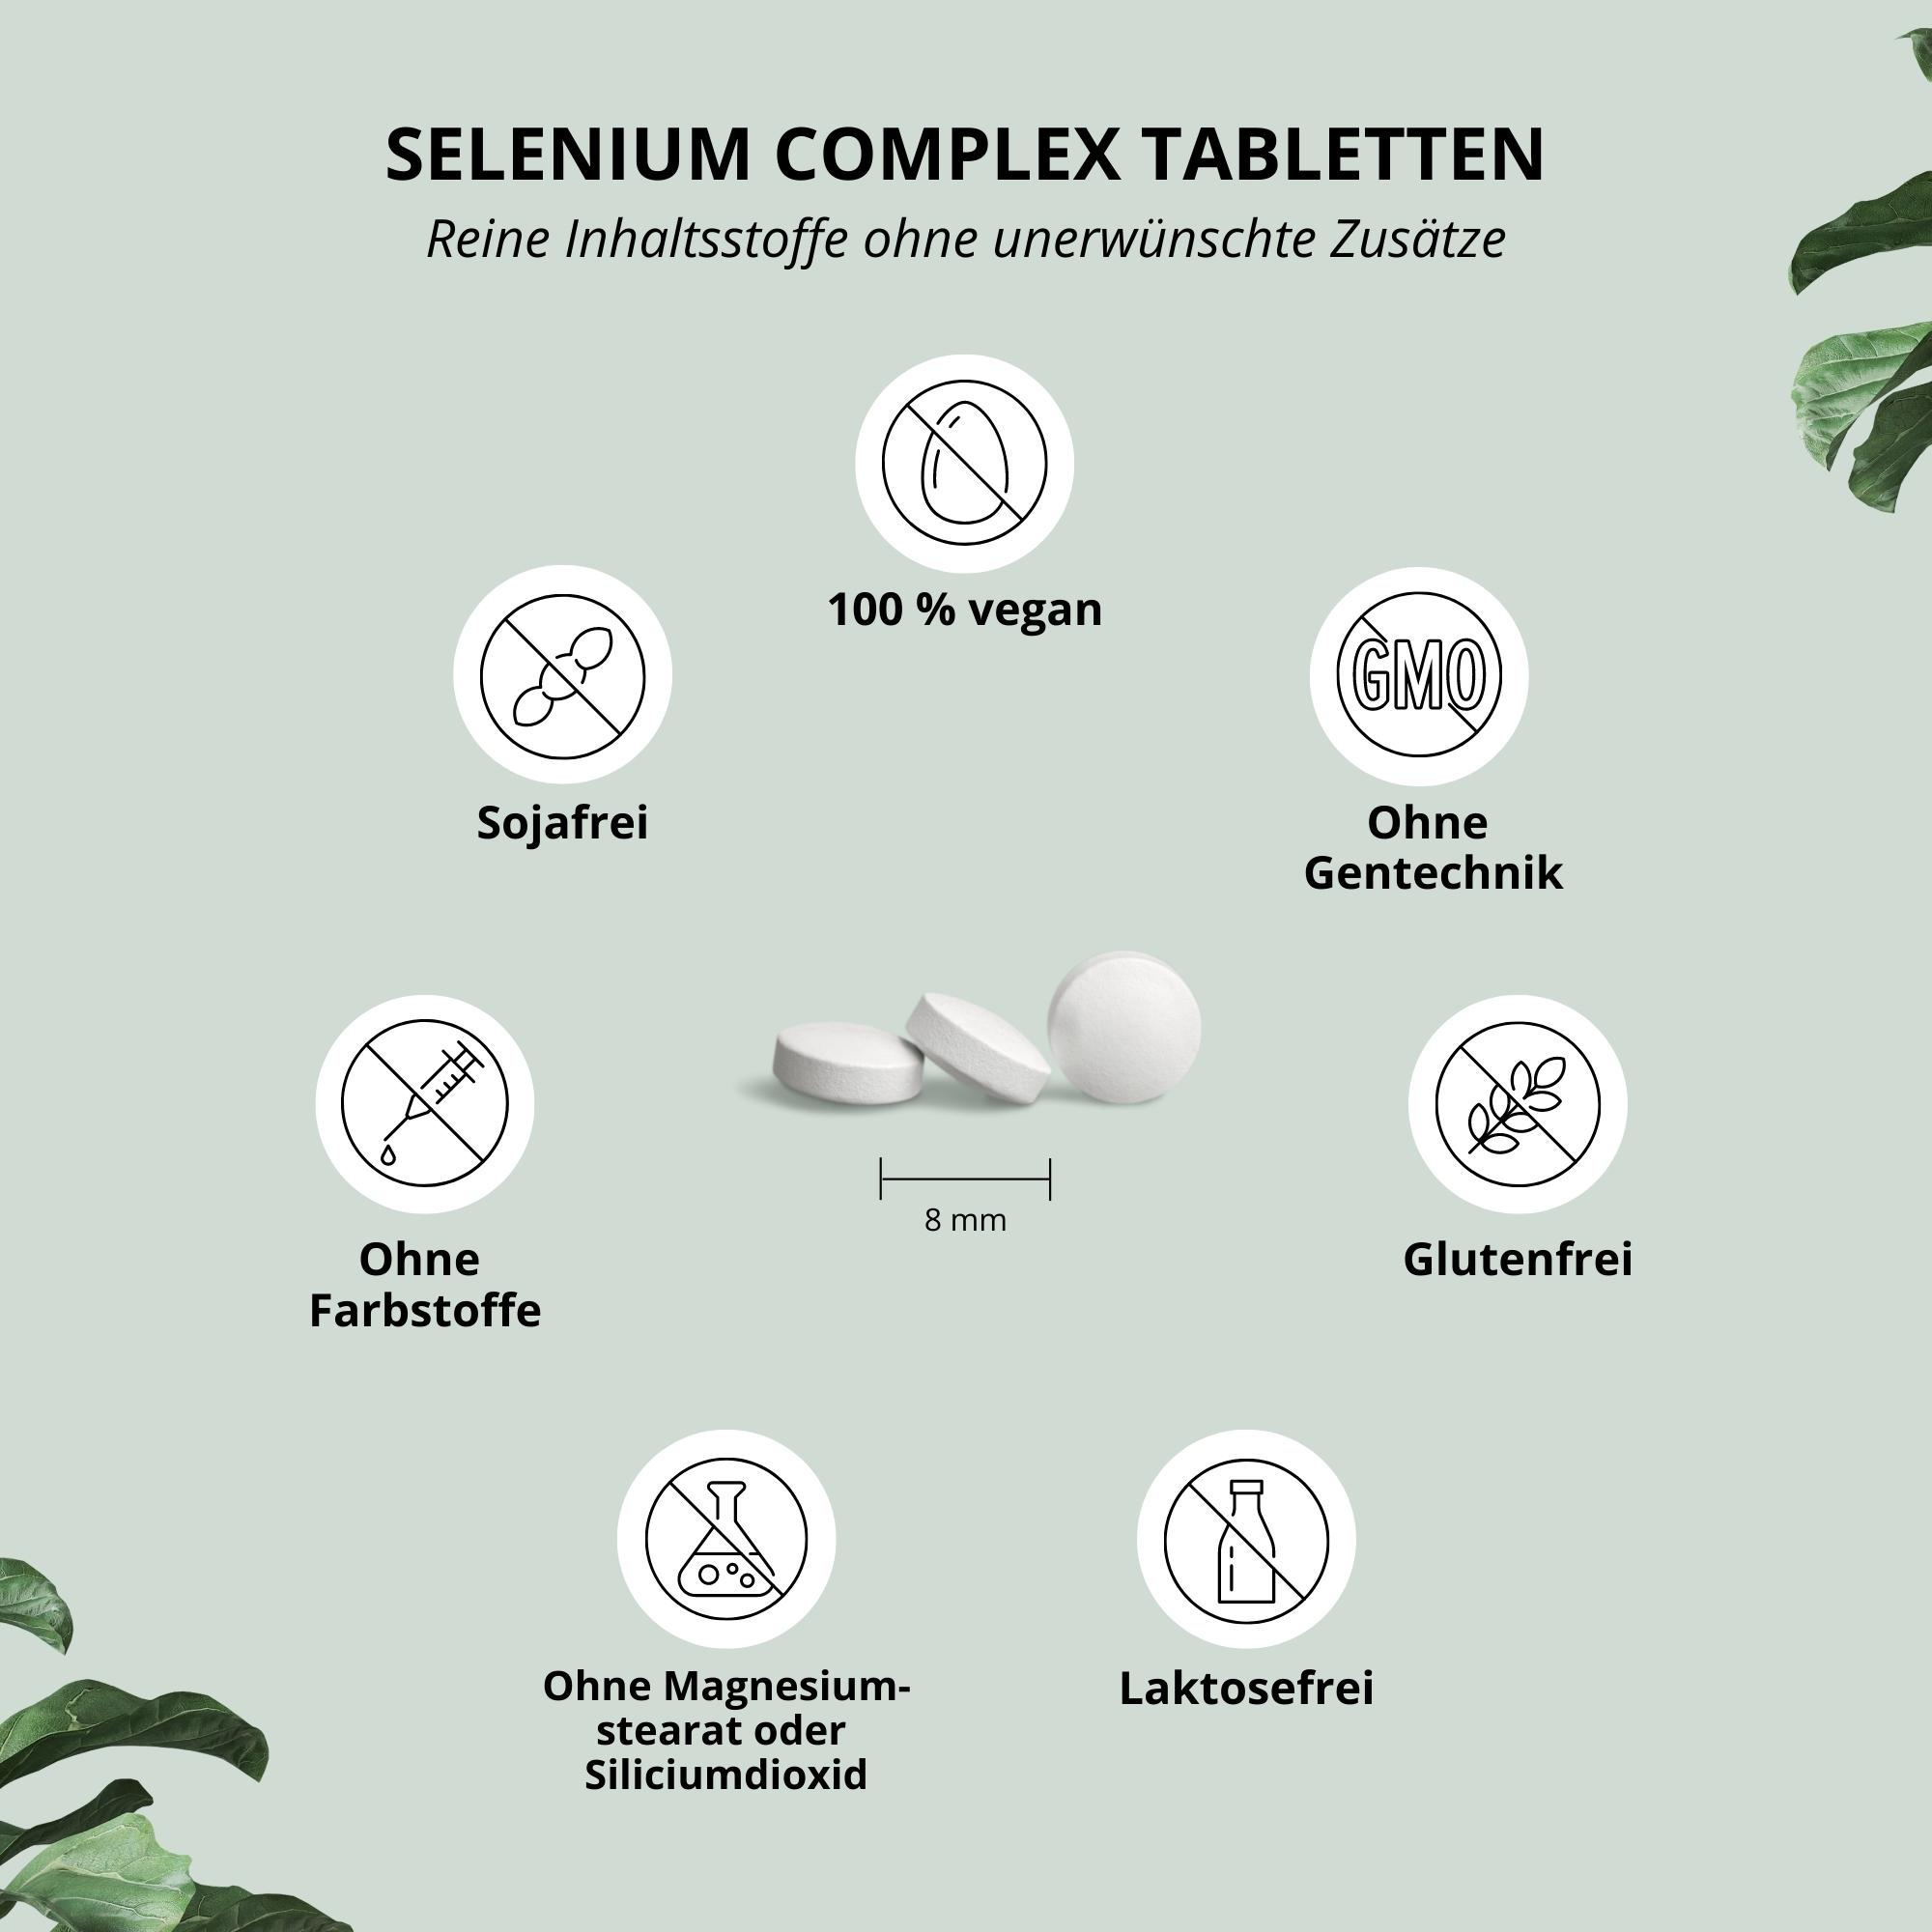 Selenium Complex Tablets